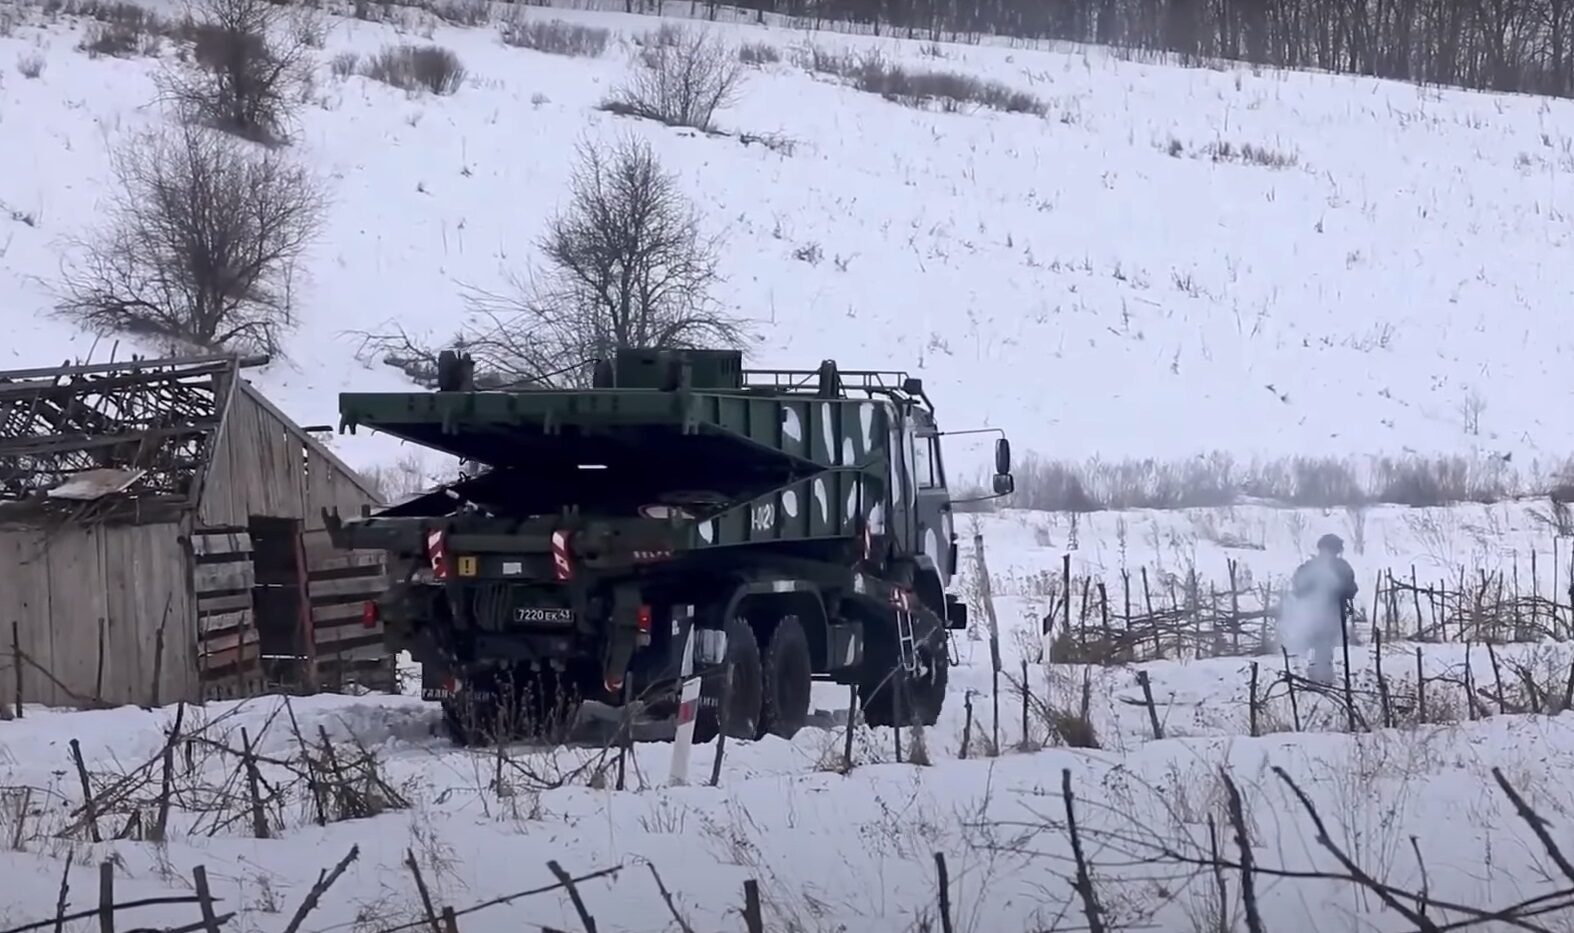 Ουκρανικός στρατός: Μισθοφόροι έχουν φθάσει στην ανατολική Ουκρανία για να πραγματοποιήσουν προβοκάτσιες